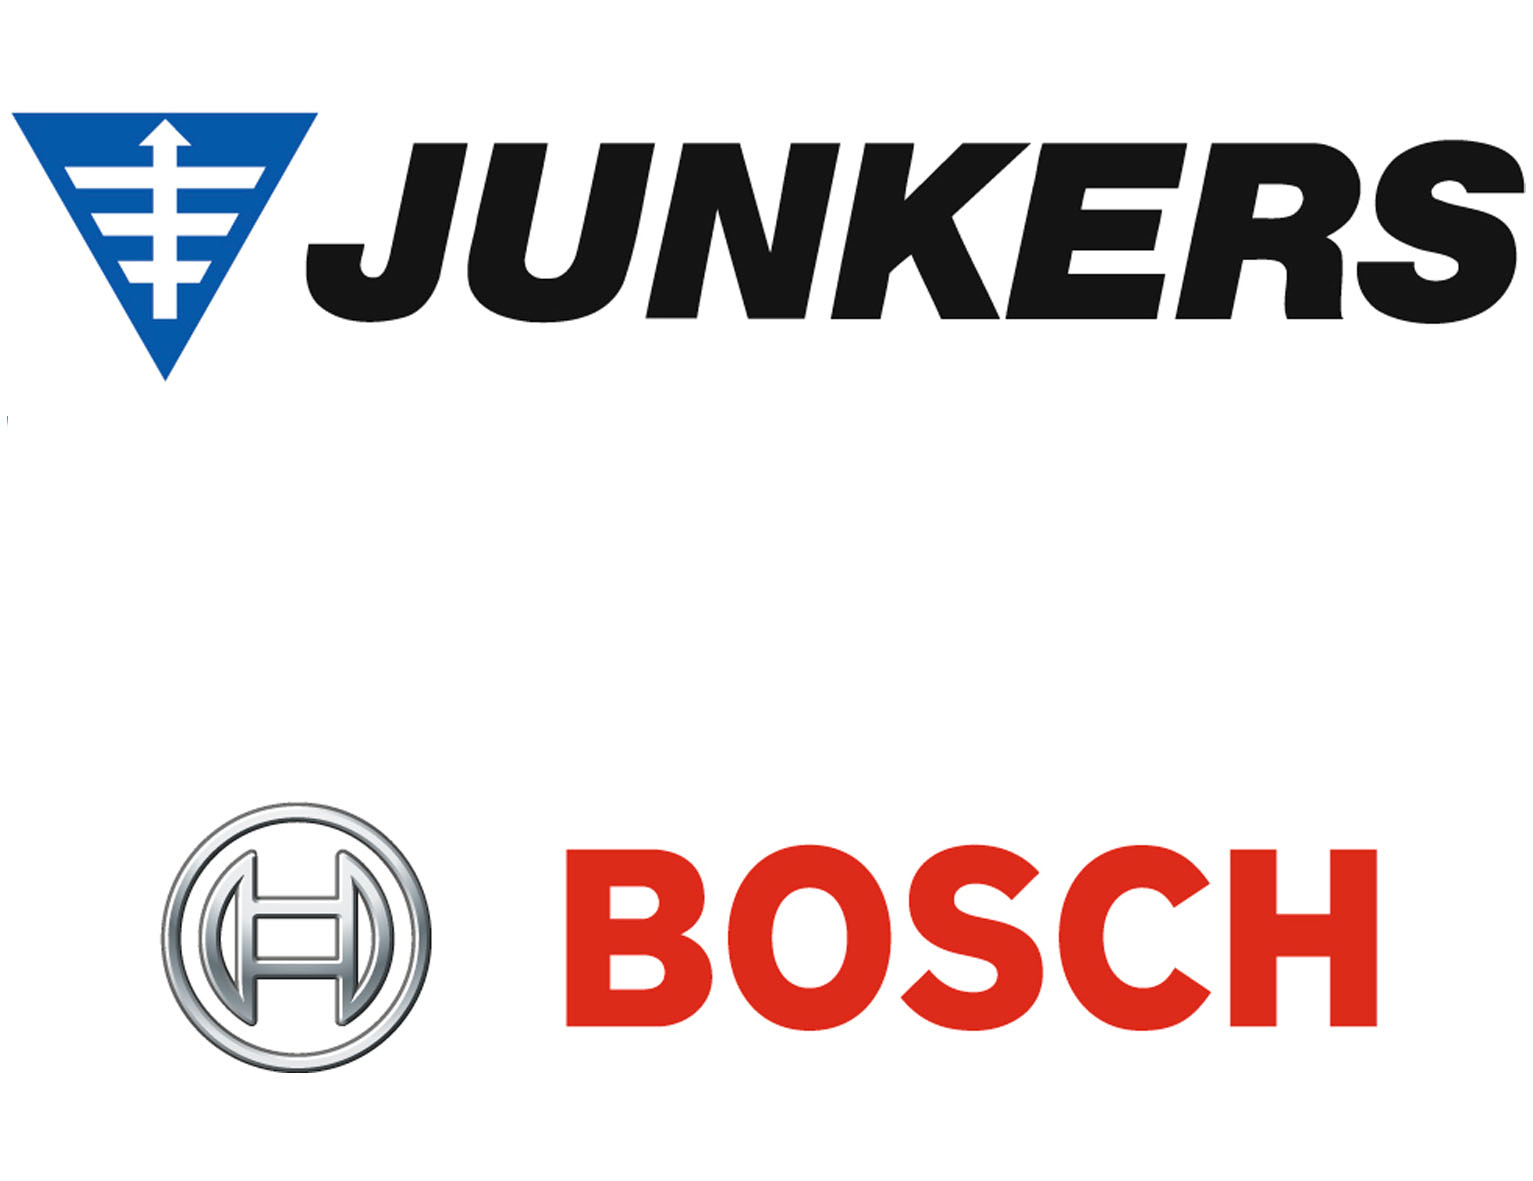 Junkers Bosch Logo